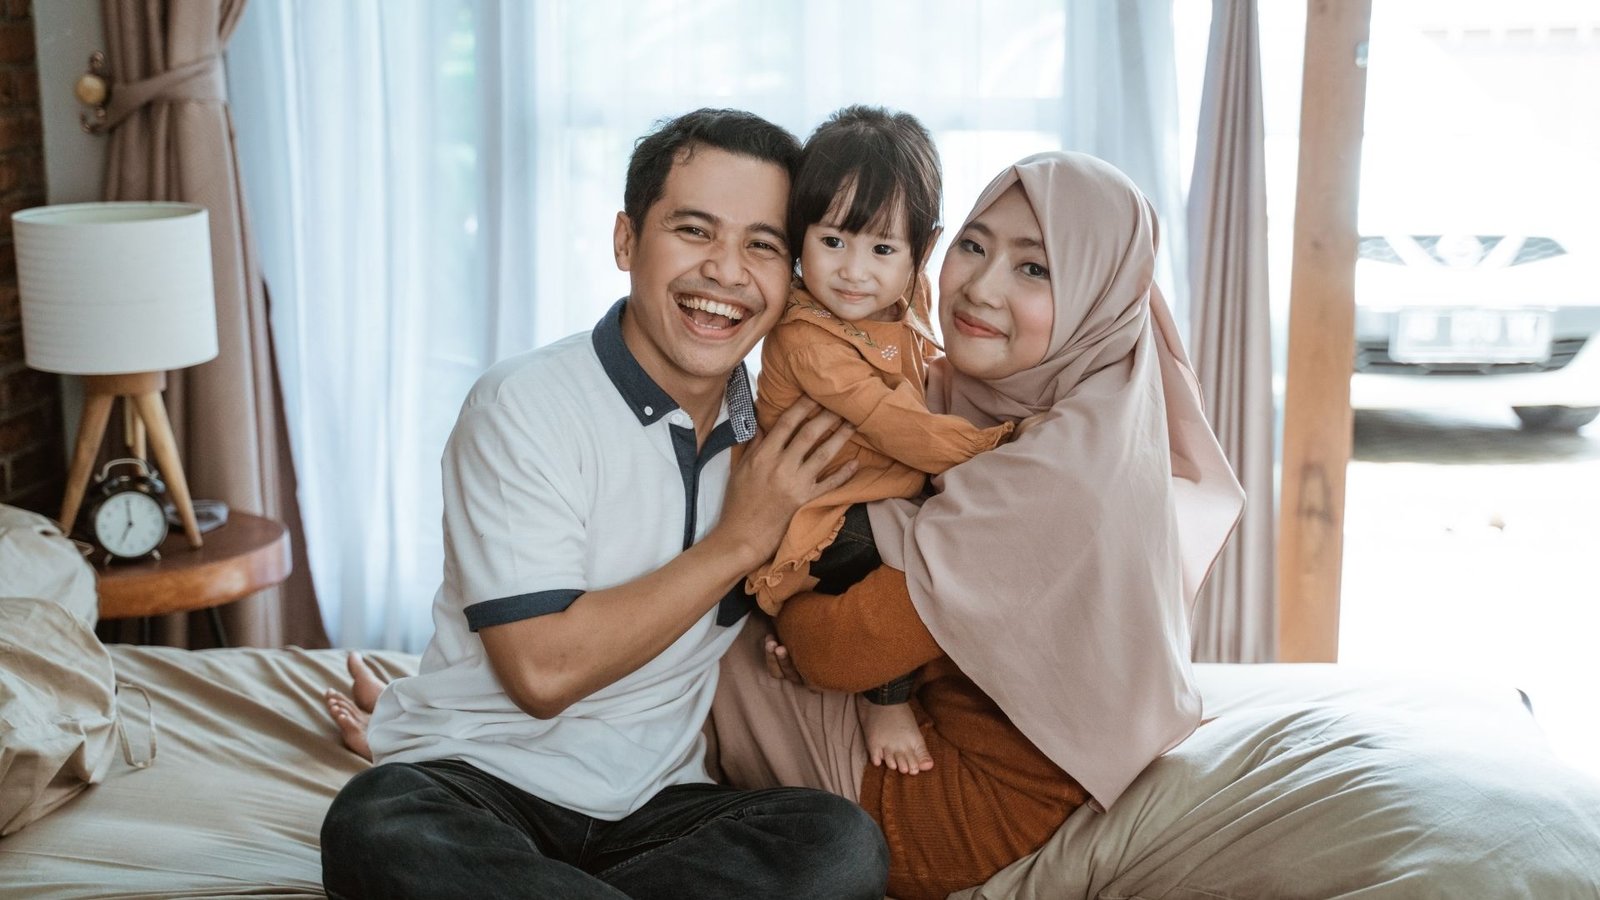 Una familia asiática feliz, sonriendo a la cámara, celebrando un reencuentro gracias a la reunificación familiar.